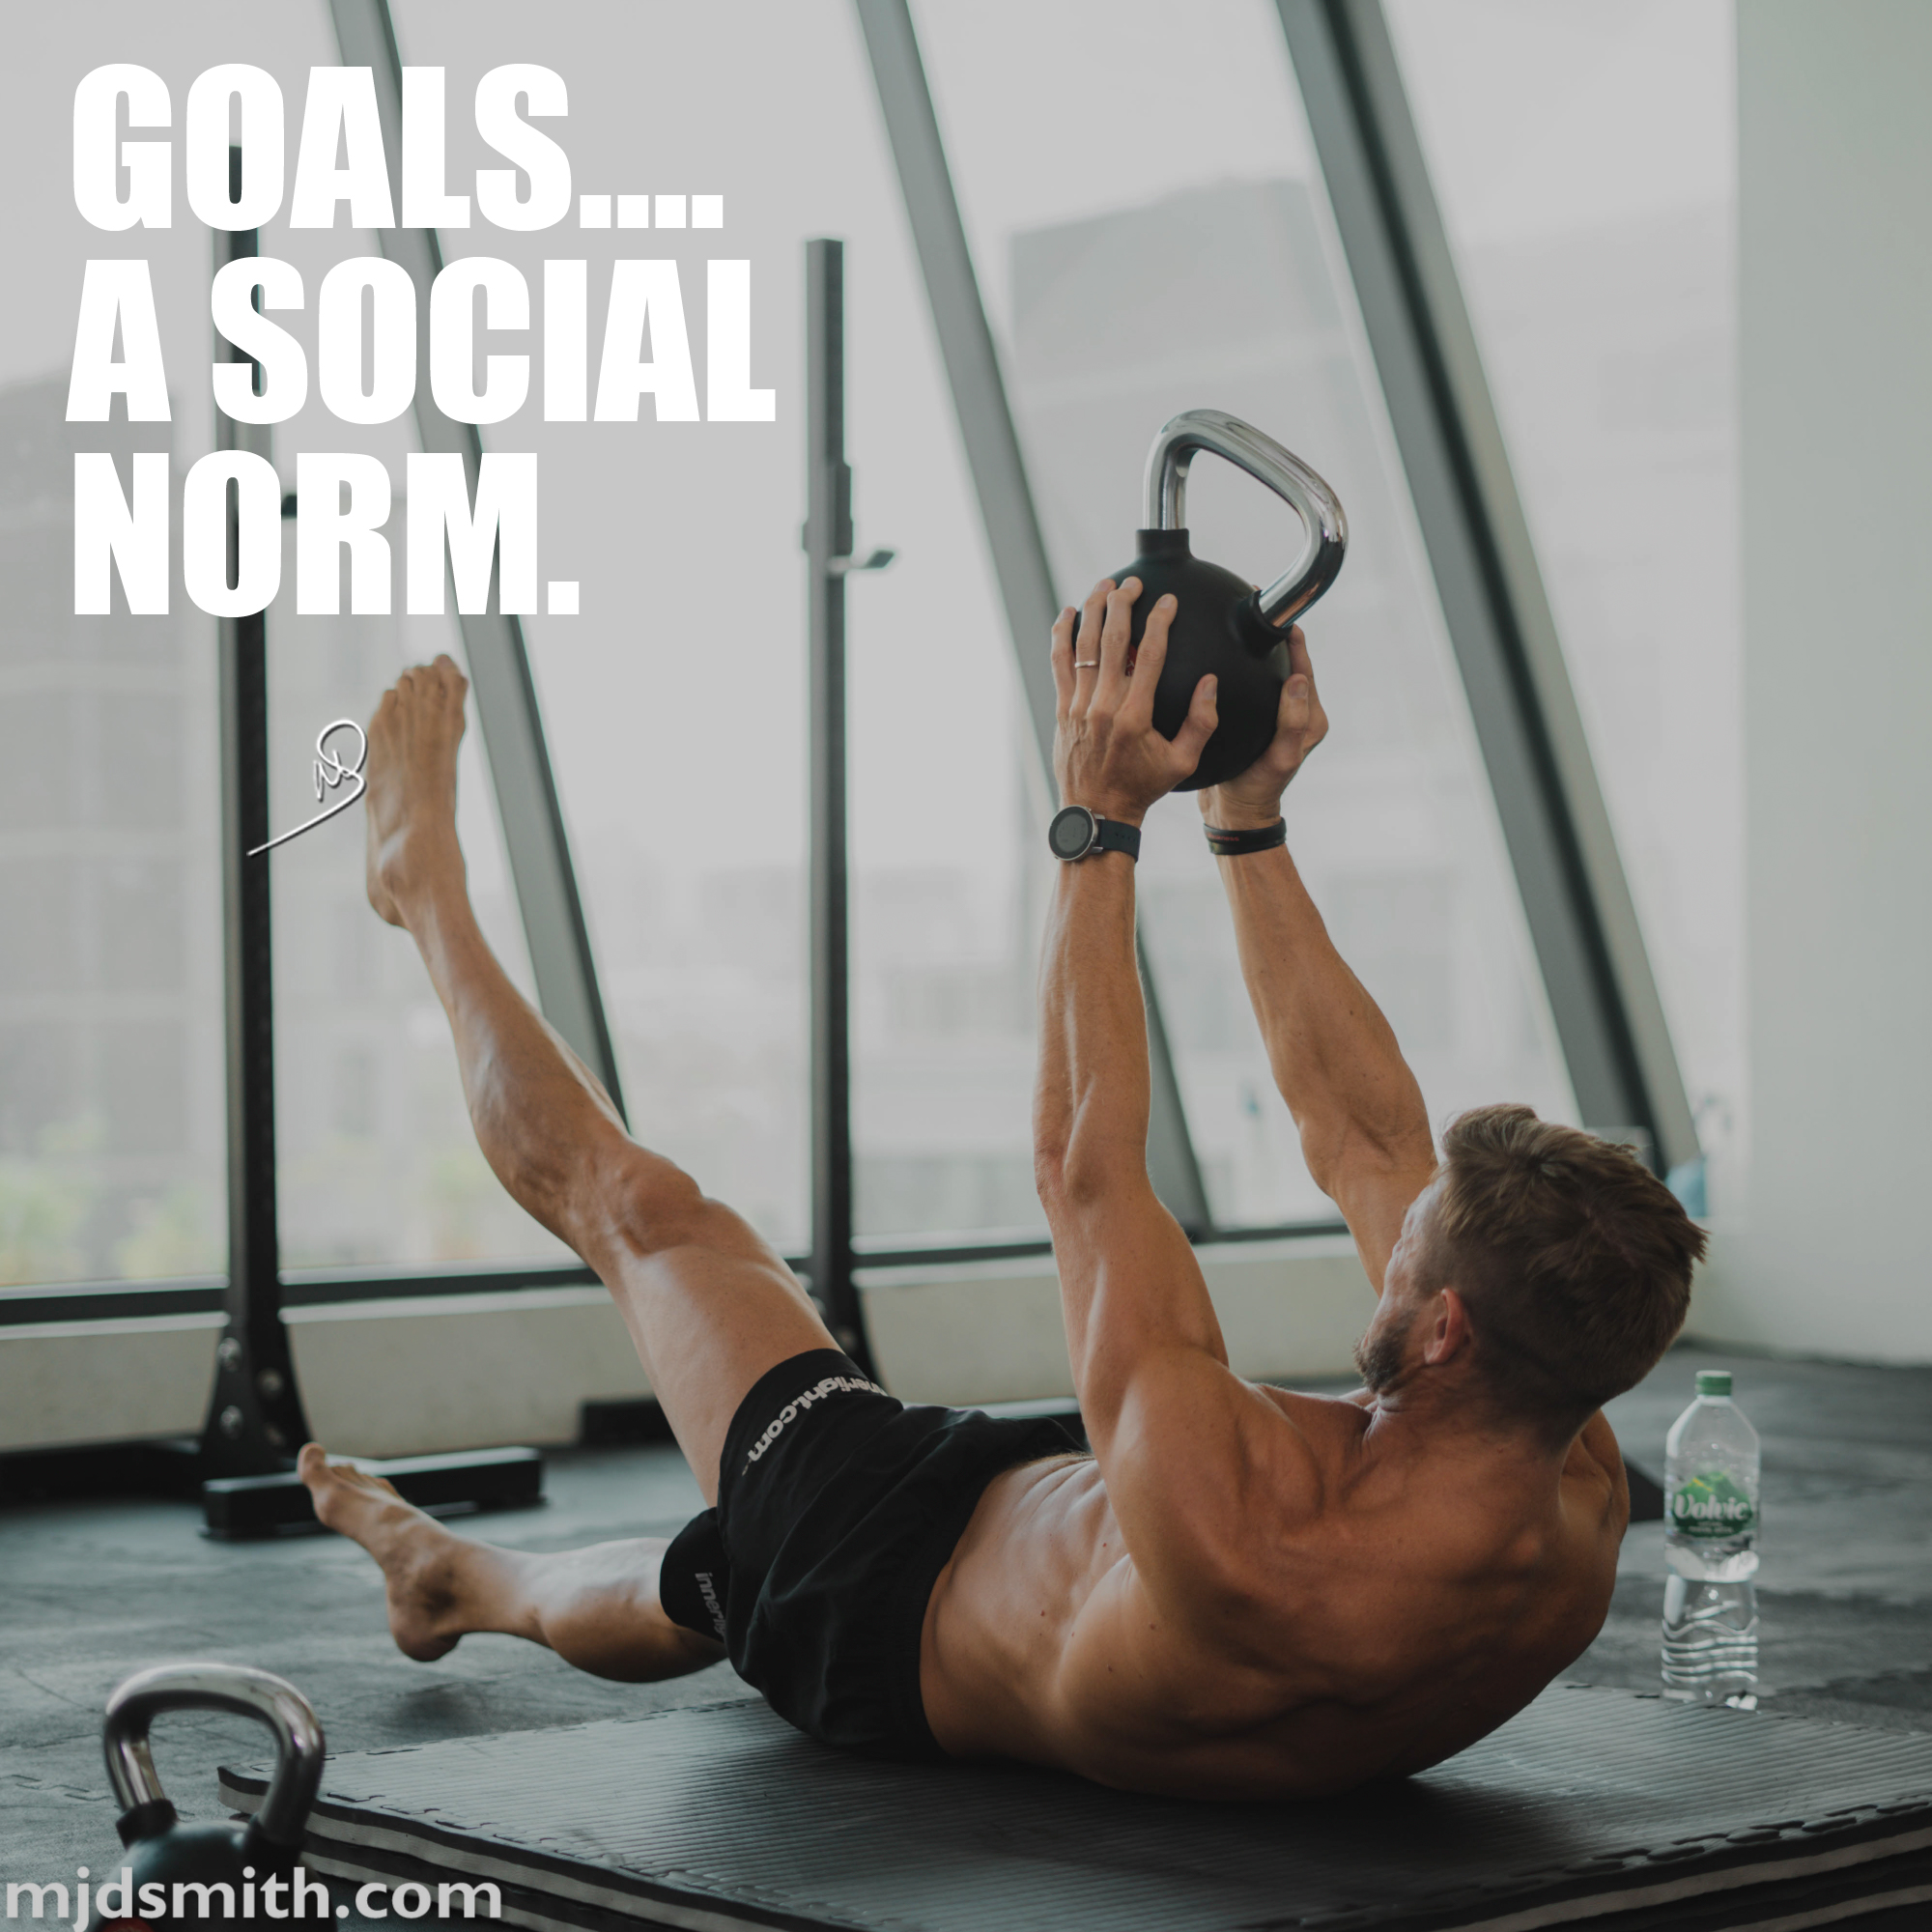 Goals….a social norm.